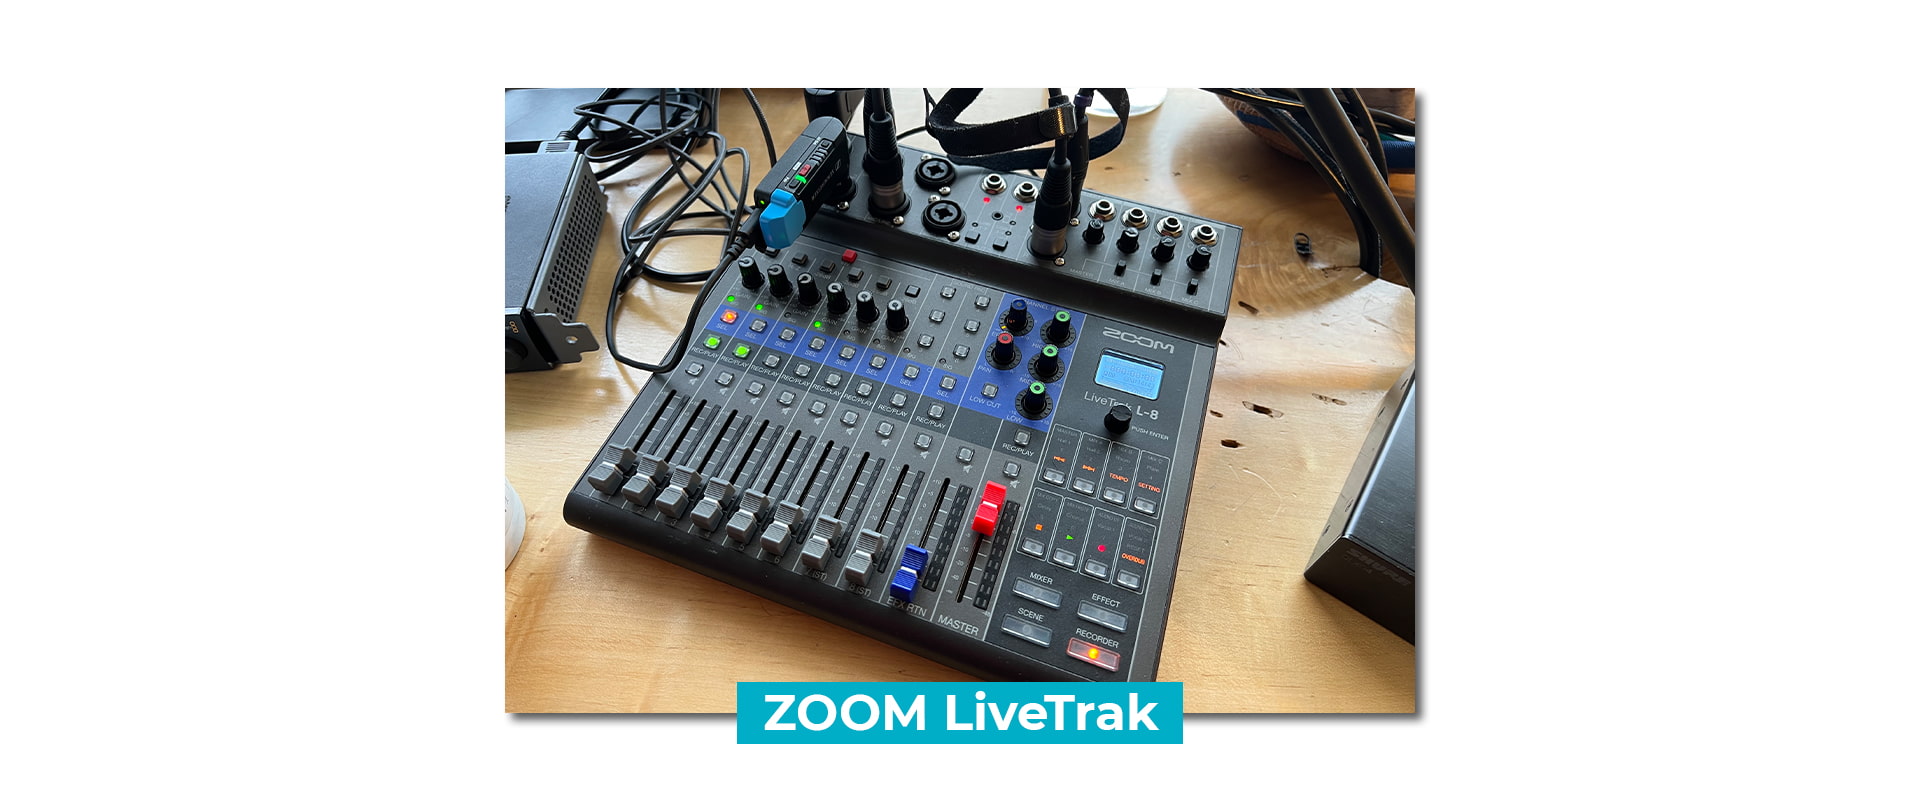  Zoom LiveTrak mixer